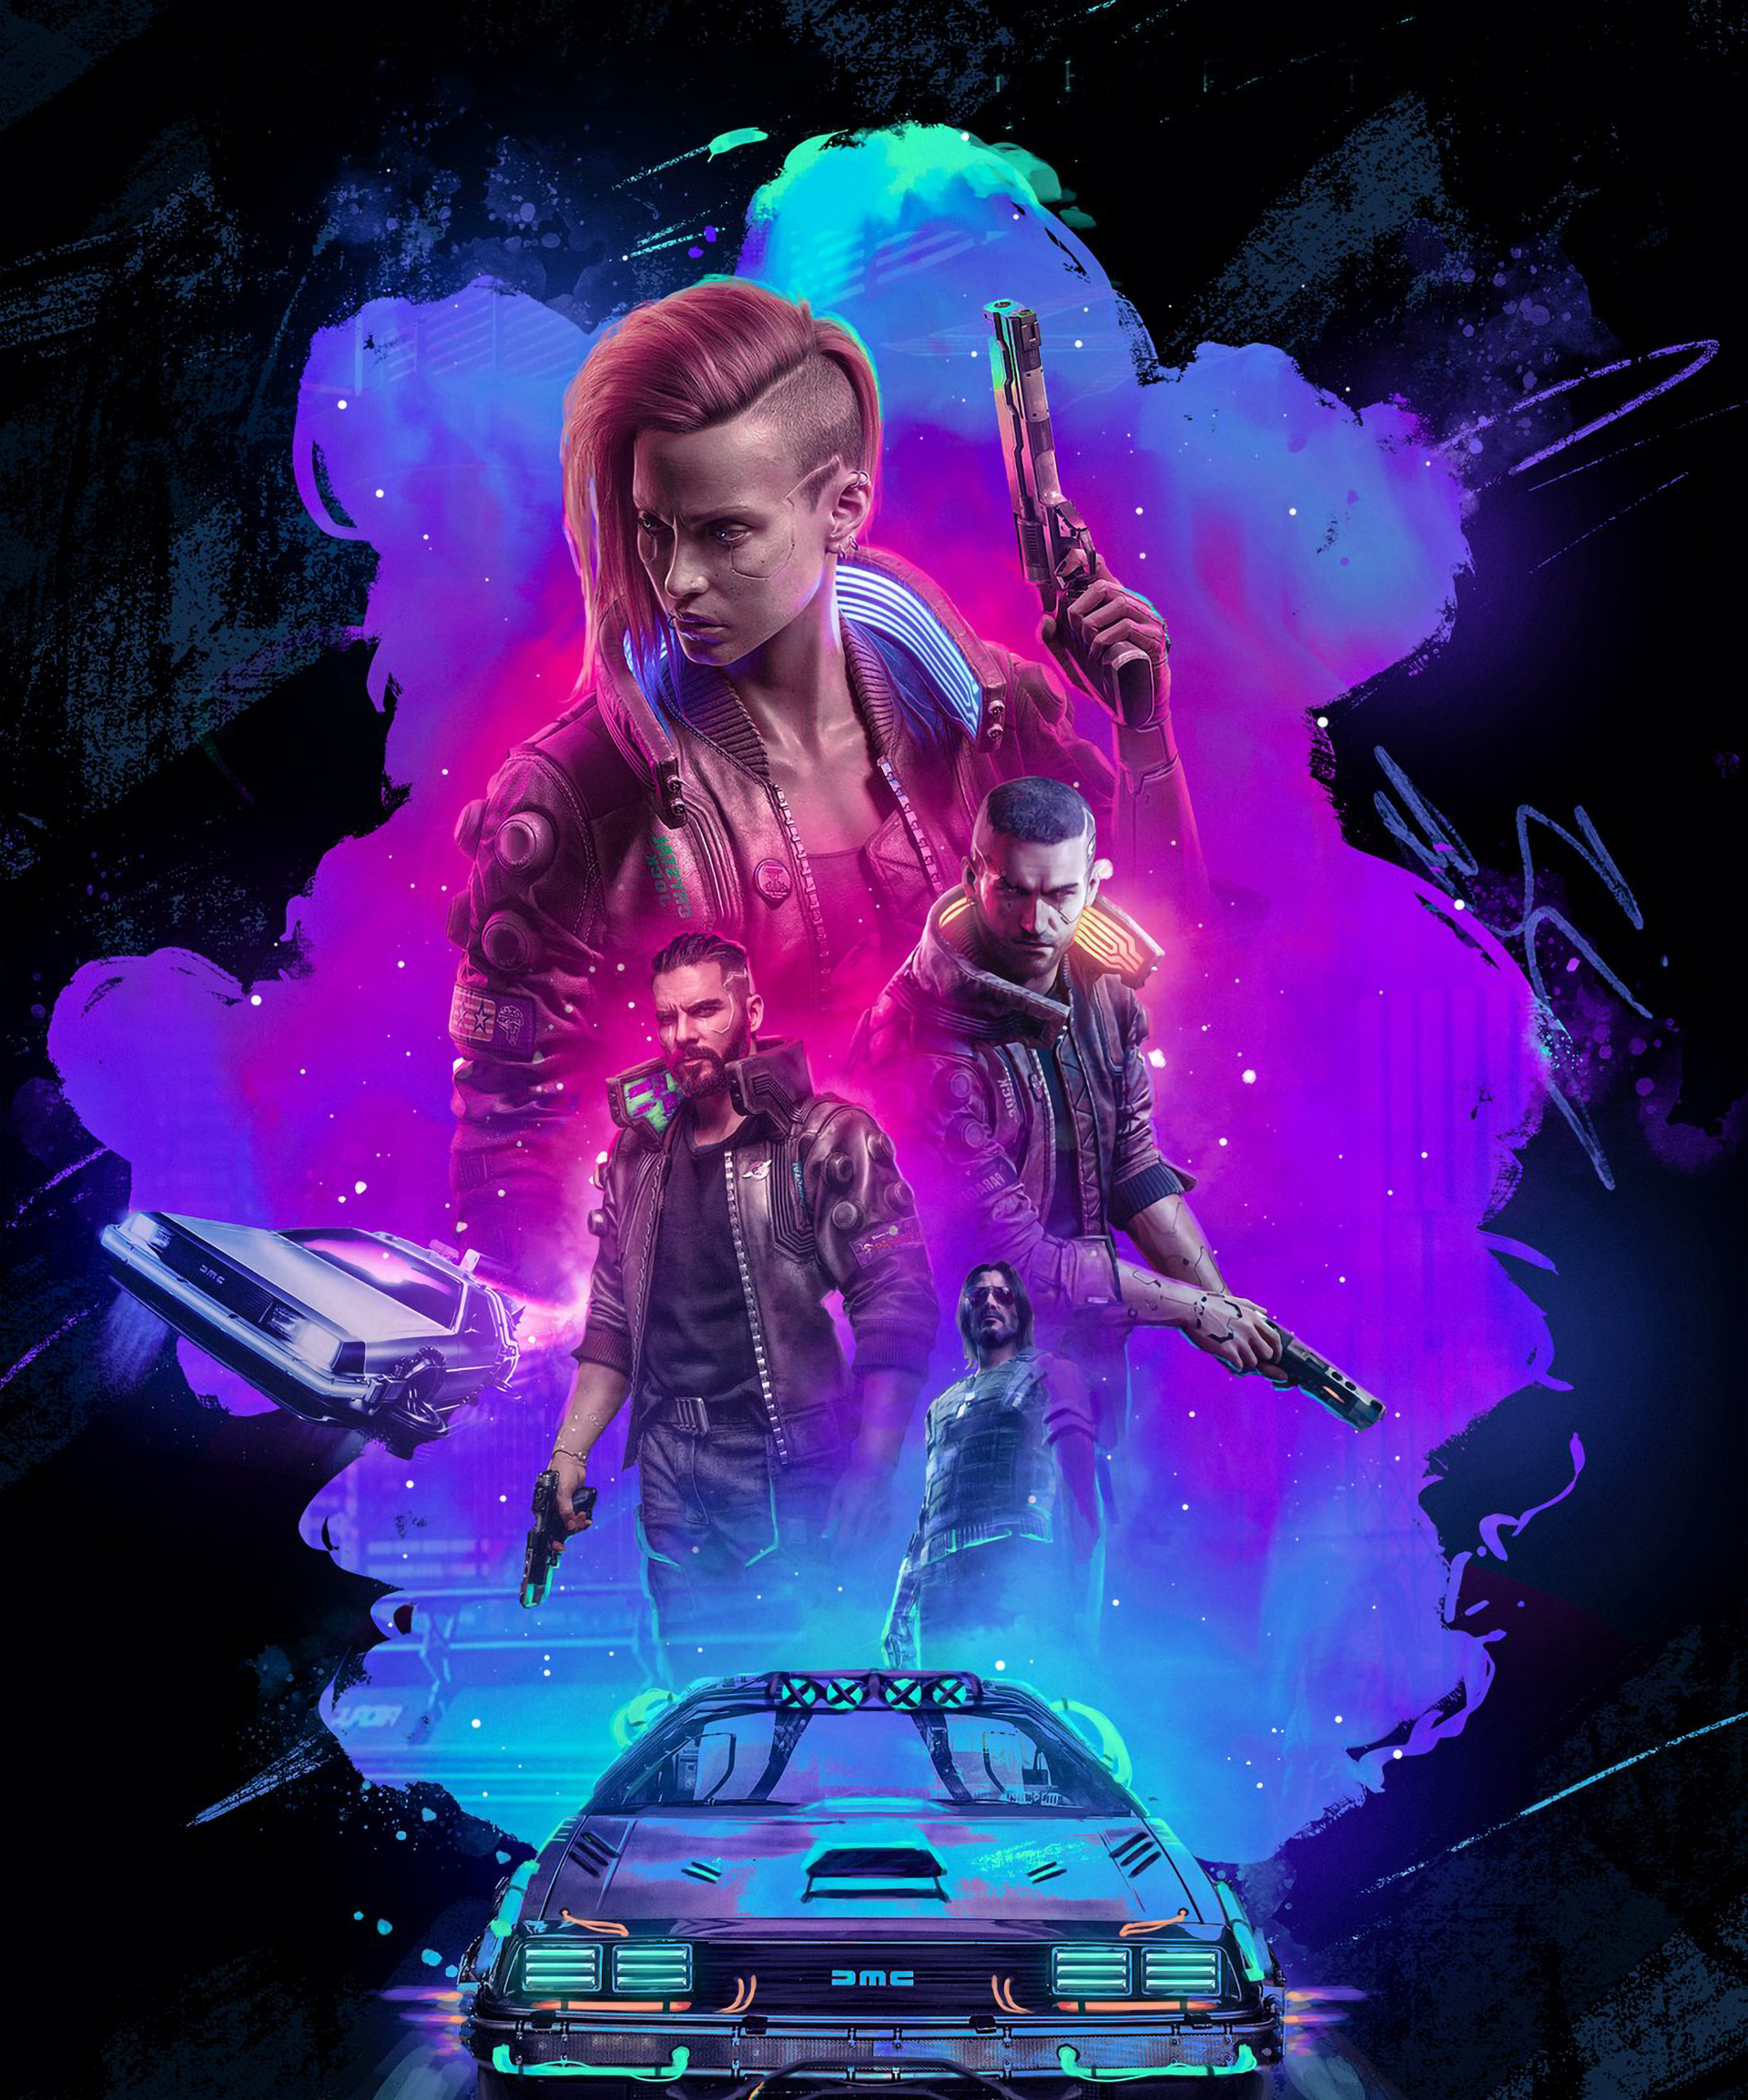  Cyberpunk  2077 Official Poster Wallpaper  HD Games  4K 